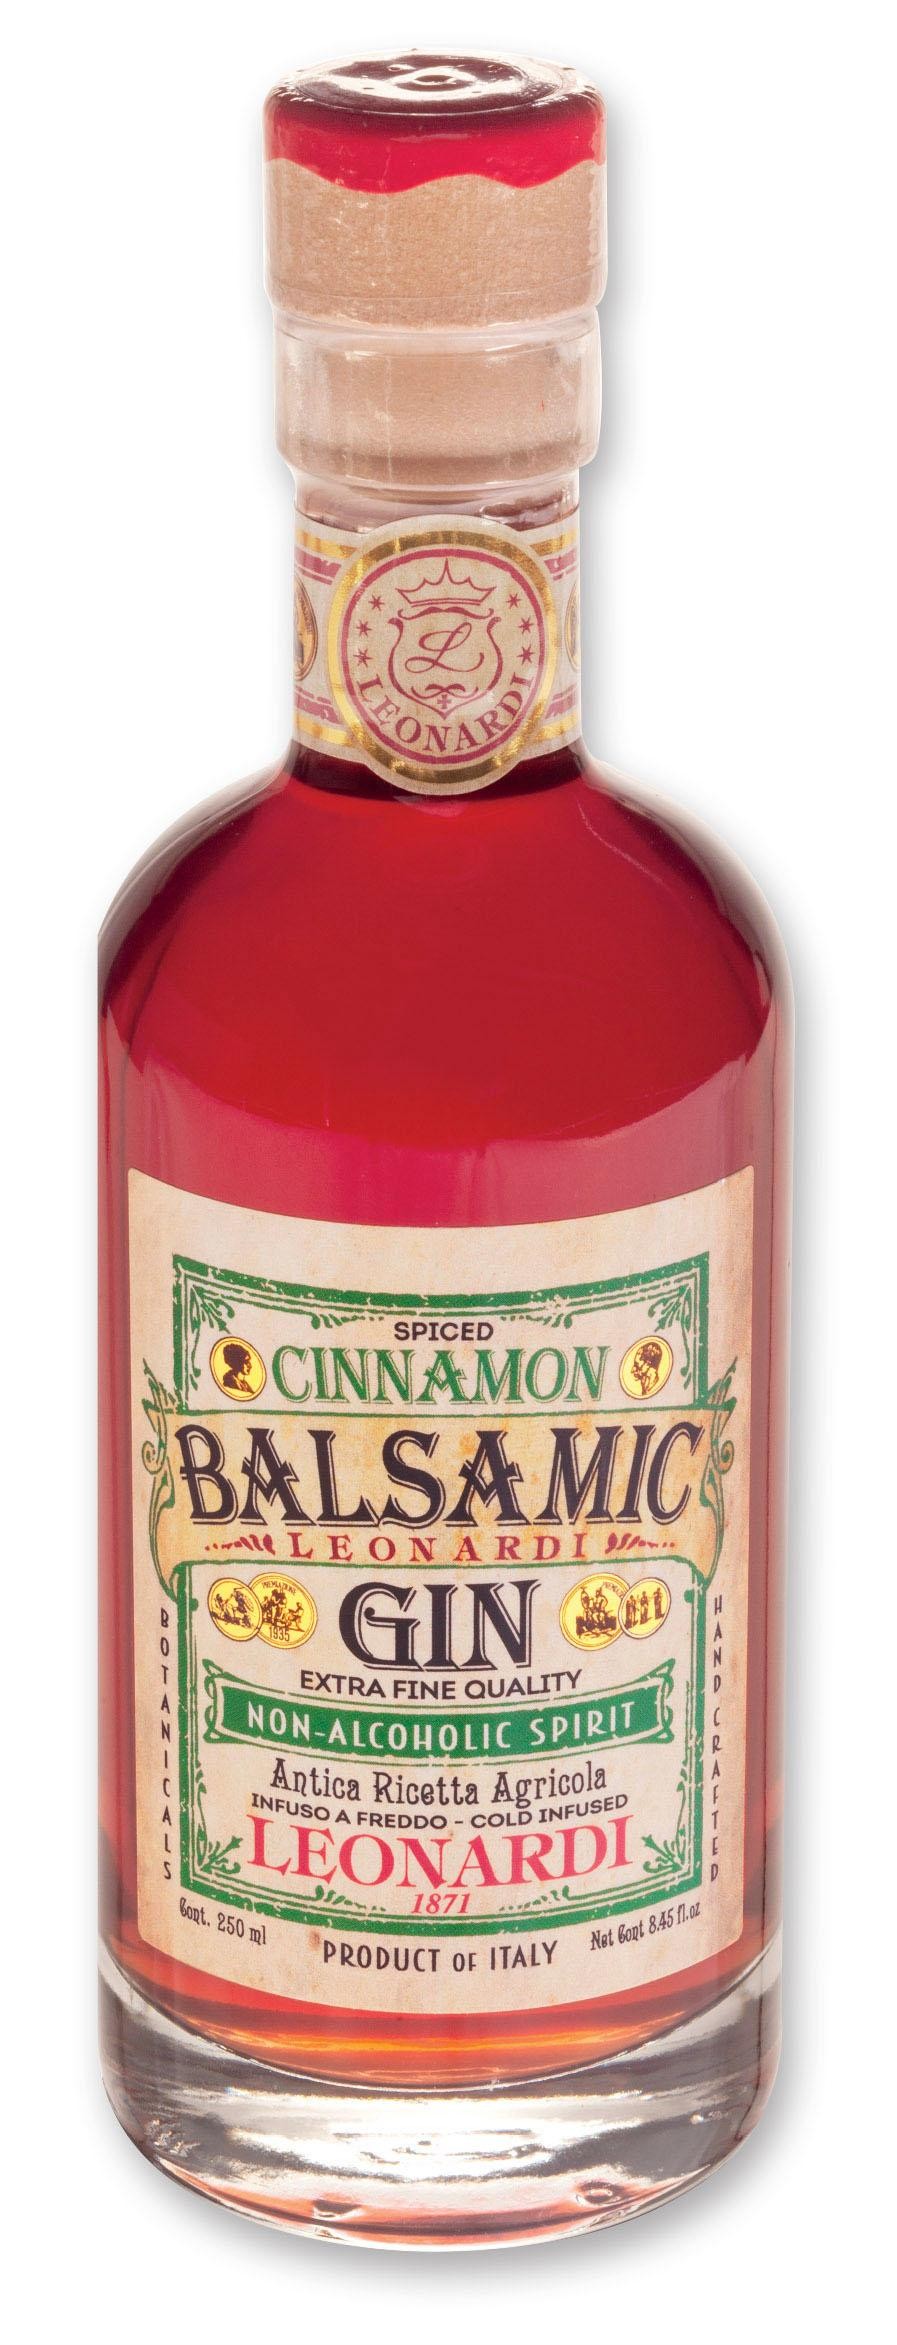 Cinnamon-Balsamic Gin